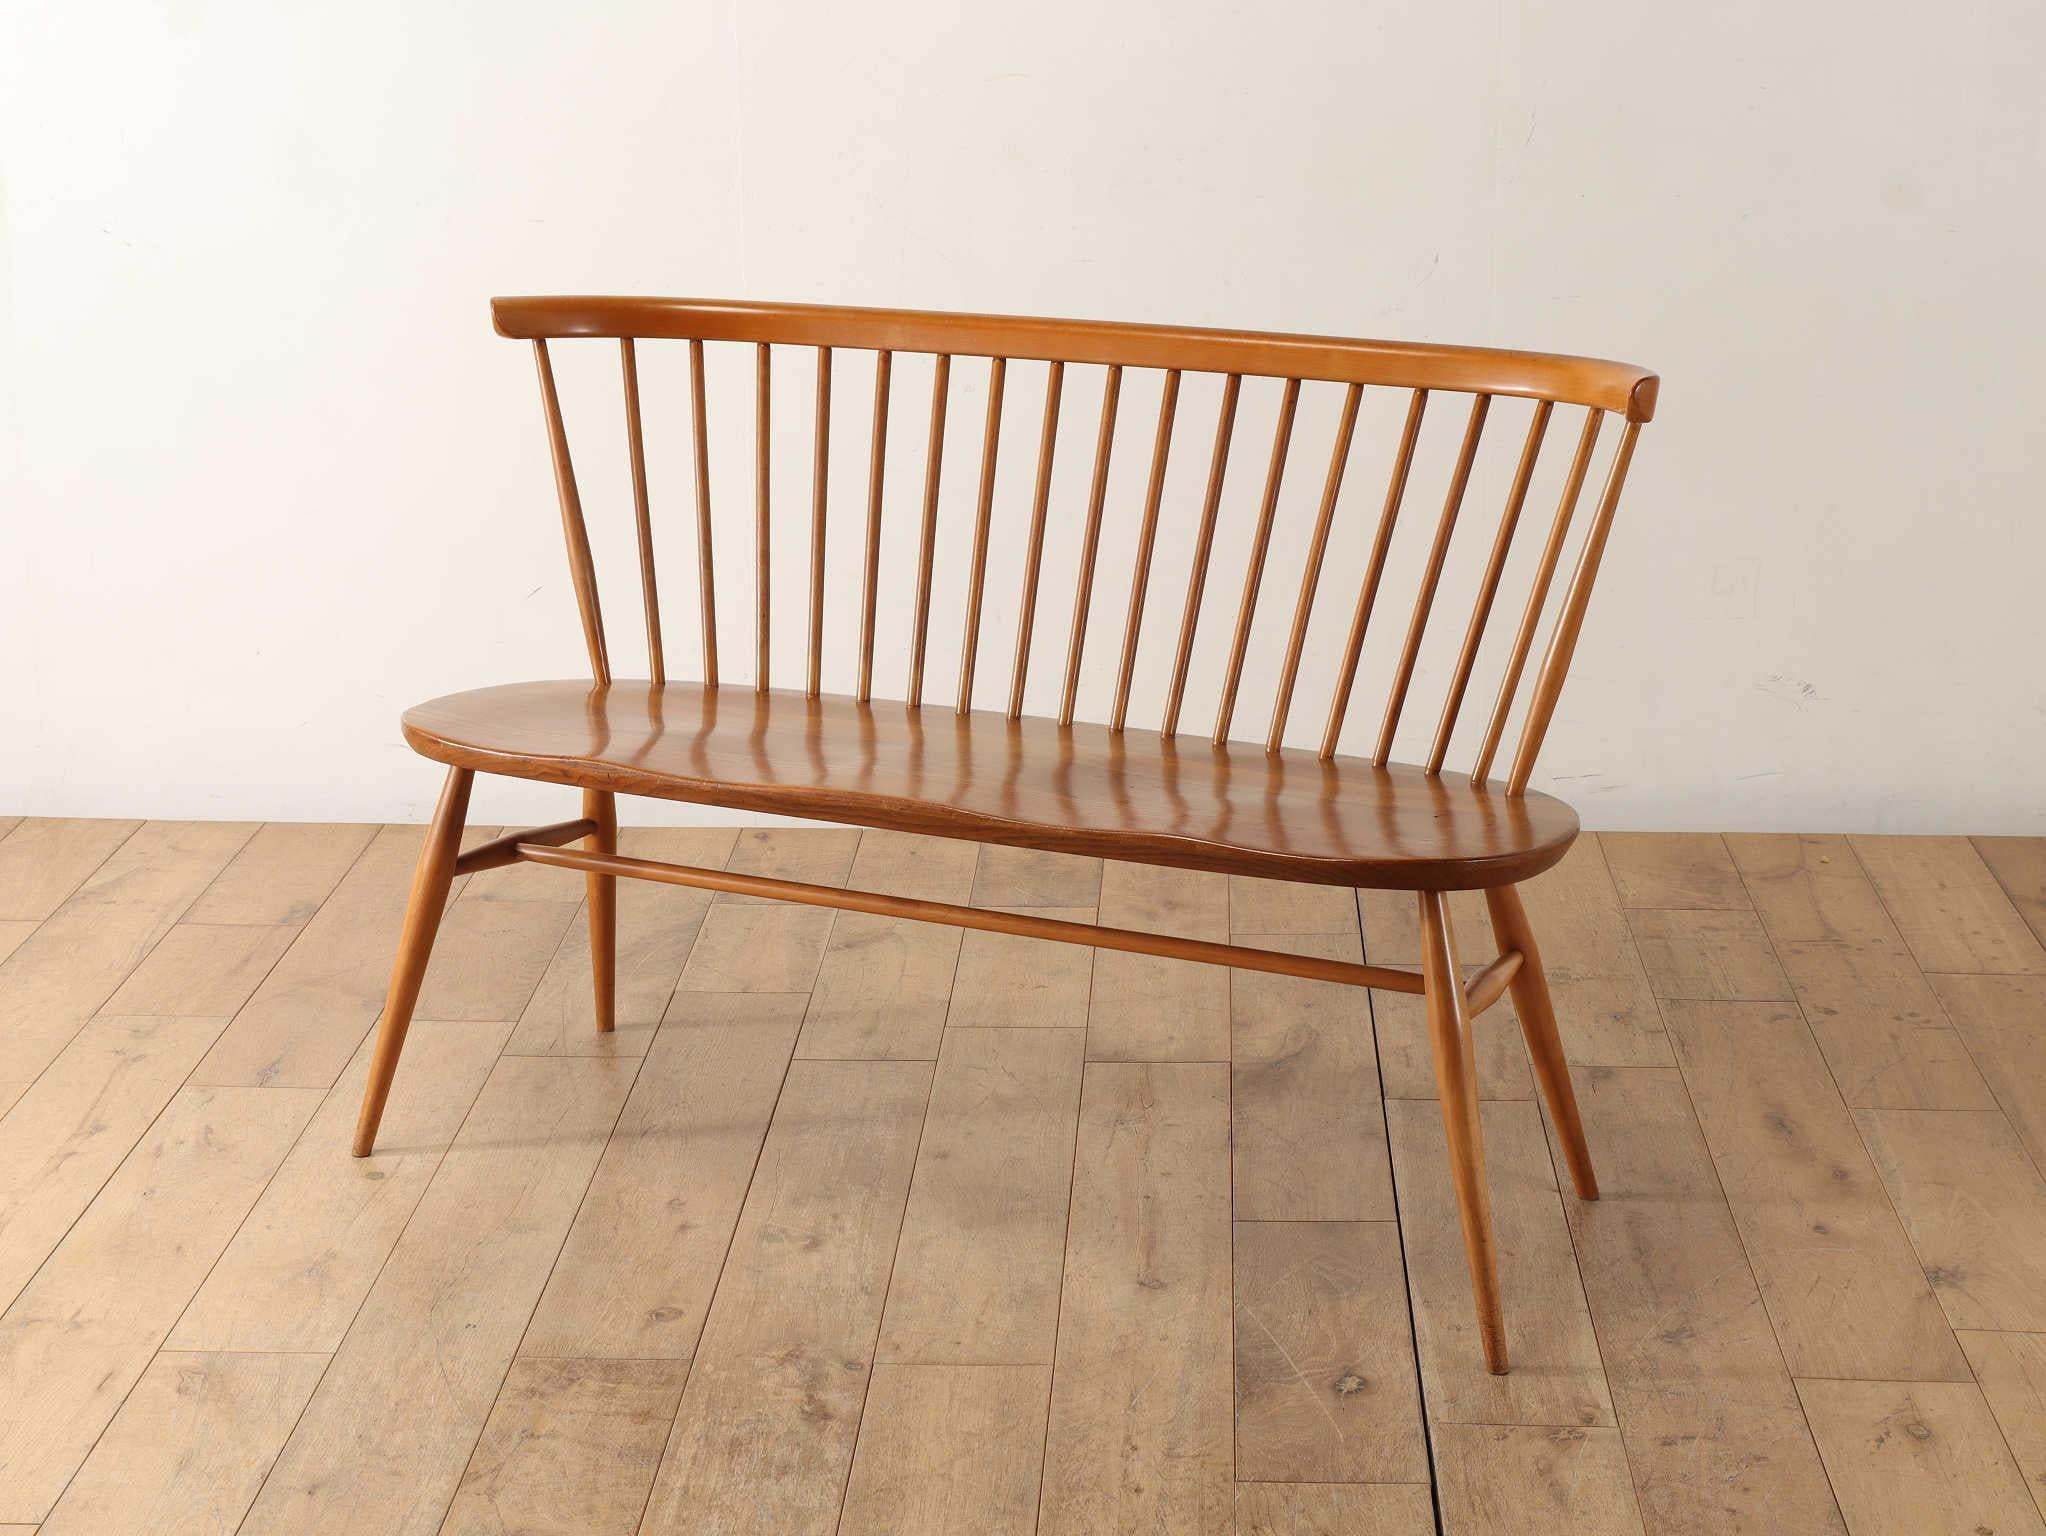 La causeuse Ercol est un représentant de la modernité britannique et reste une marque populaire fondée par le designer Lucian R. Ercolani en 1920. La forme lisse de l'assise, en bois d'orme dur et résistant à la flexion, avec des angles lisses,